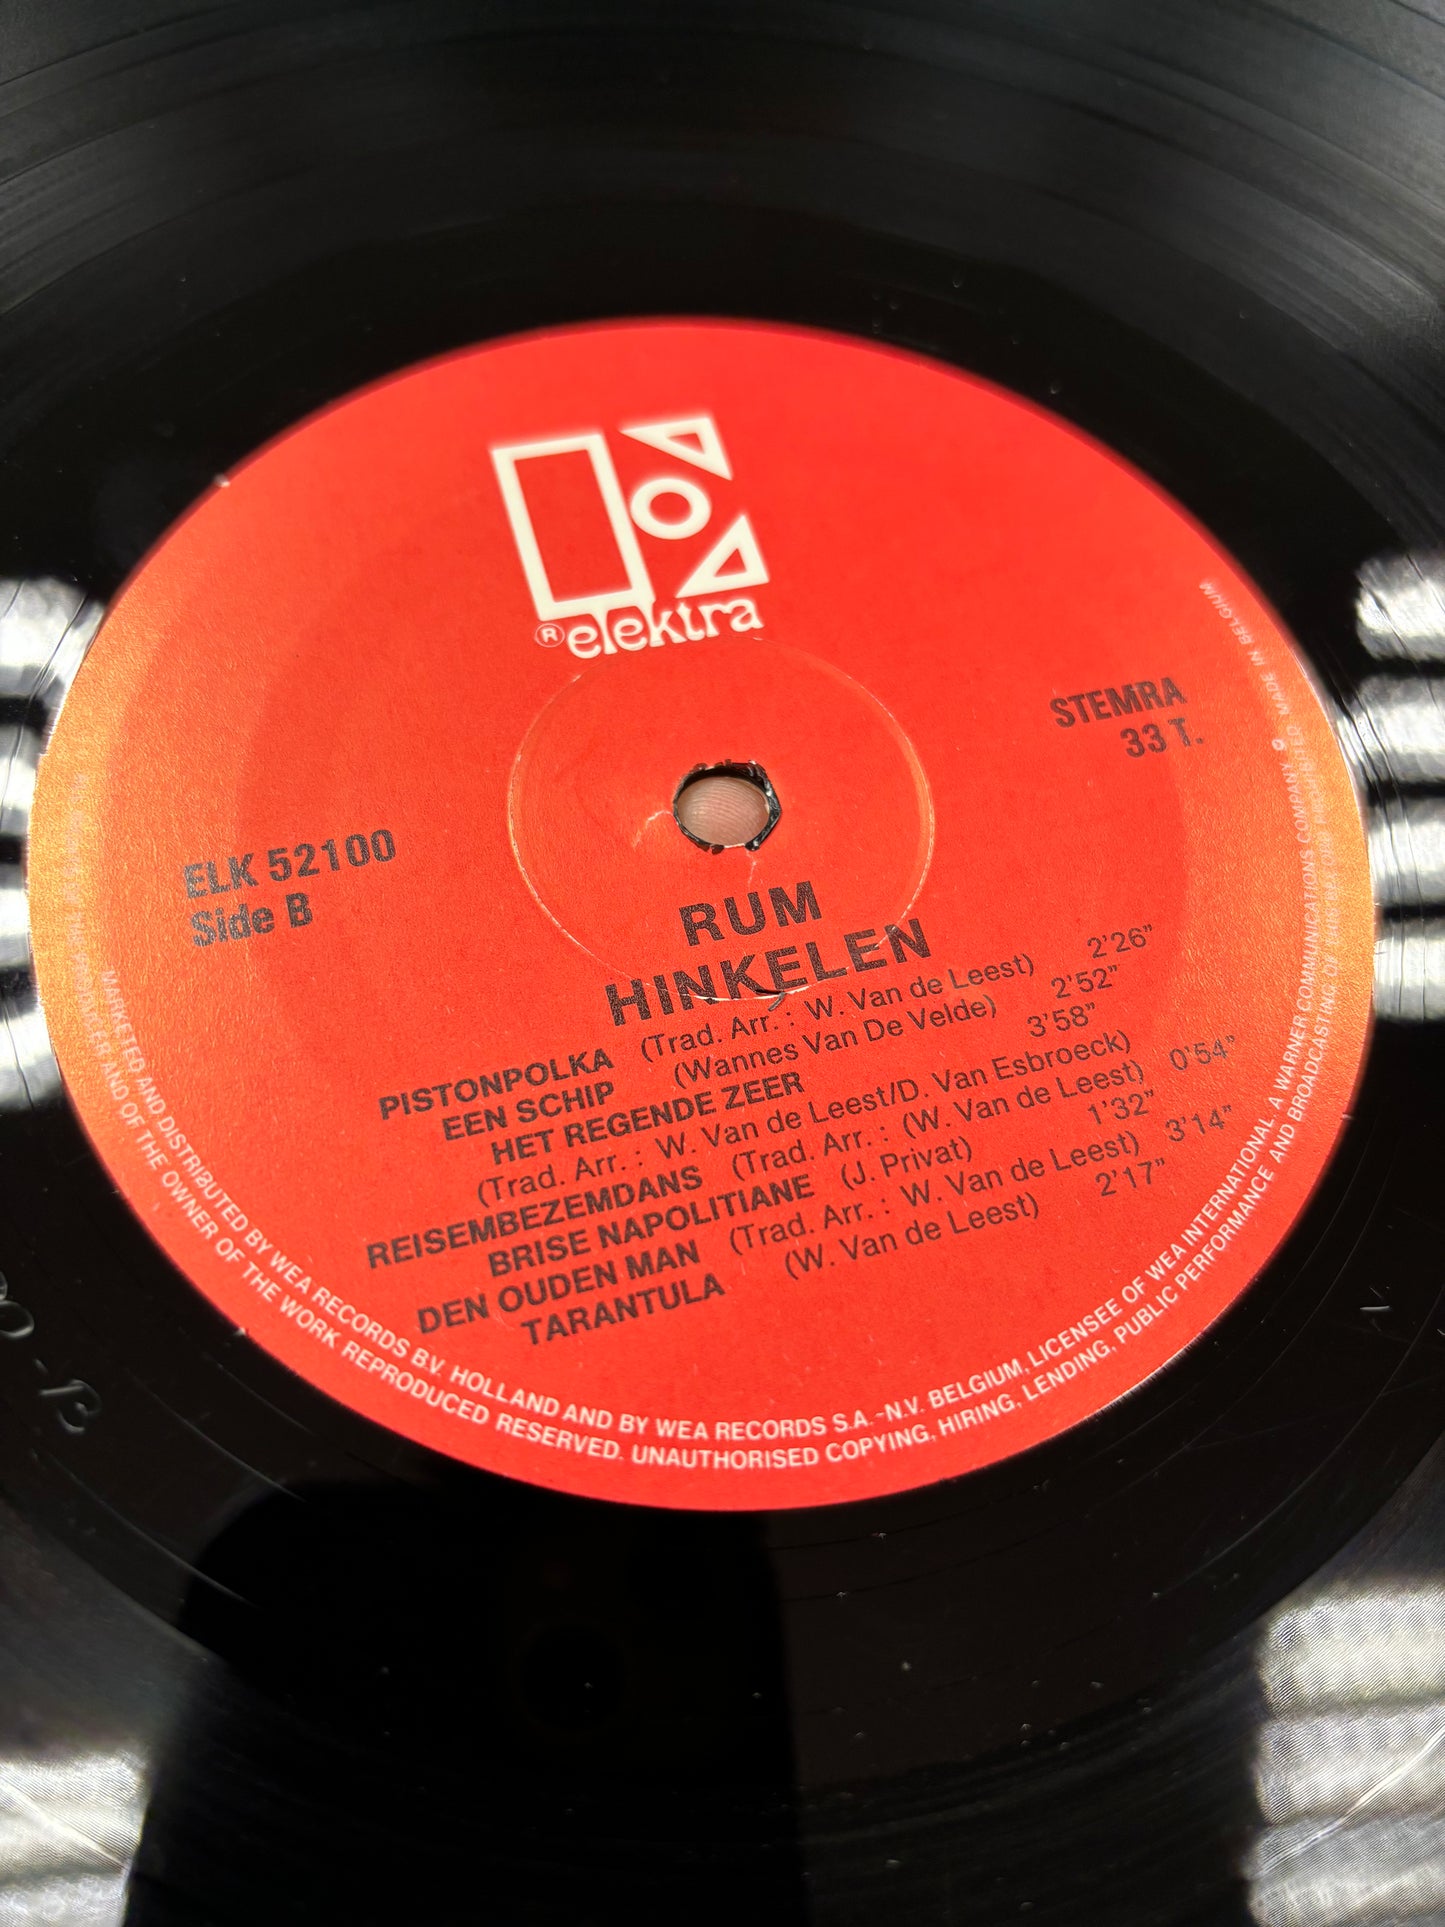 Rum: Hinkelen, LP, Belgium 1978